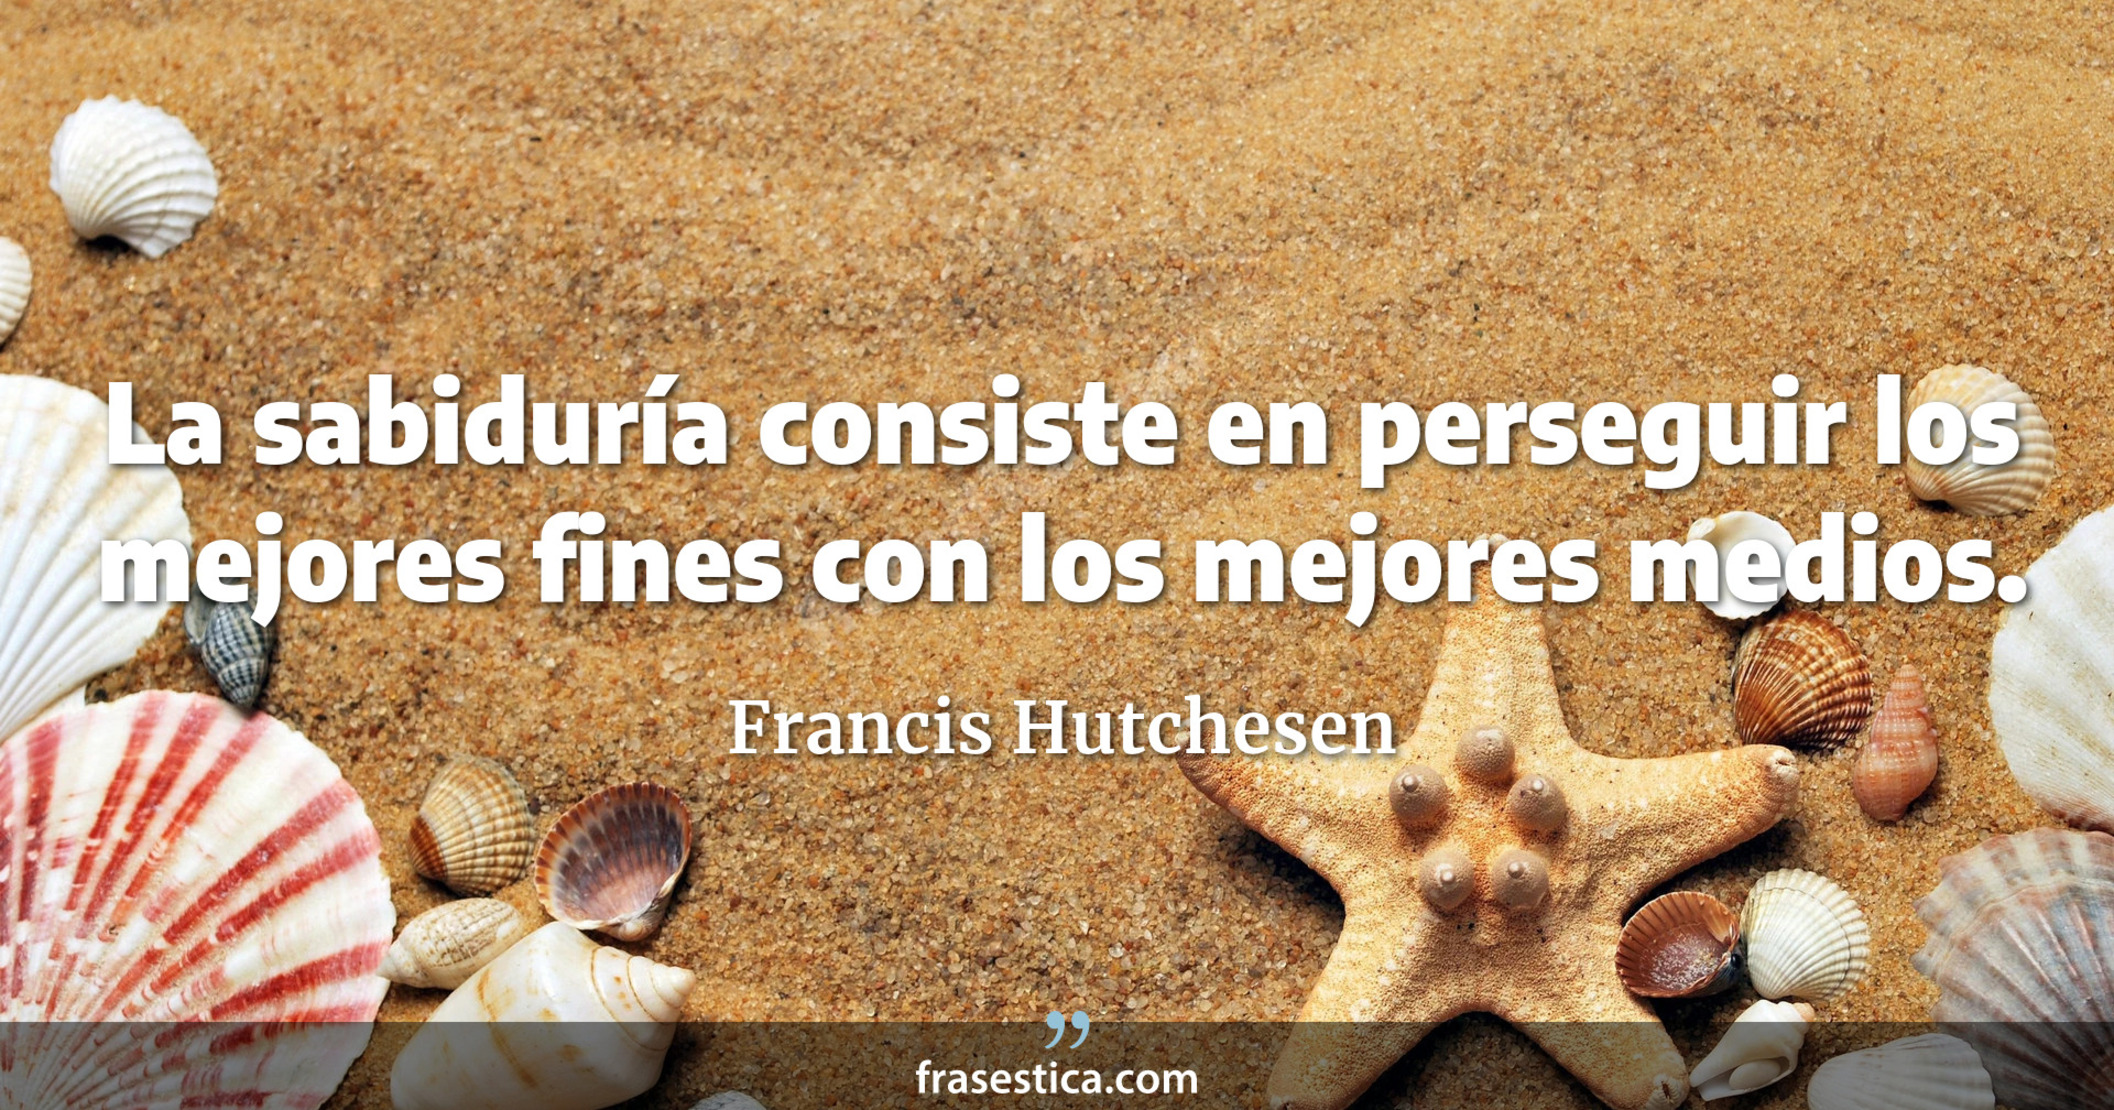 La sabiduría consiste en perseguir los mejores fines con los mejores medios. - Francis Hutchesen